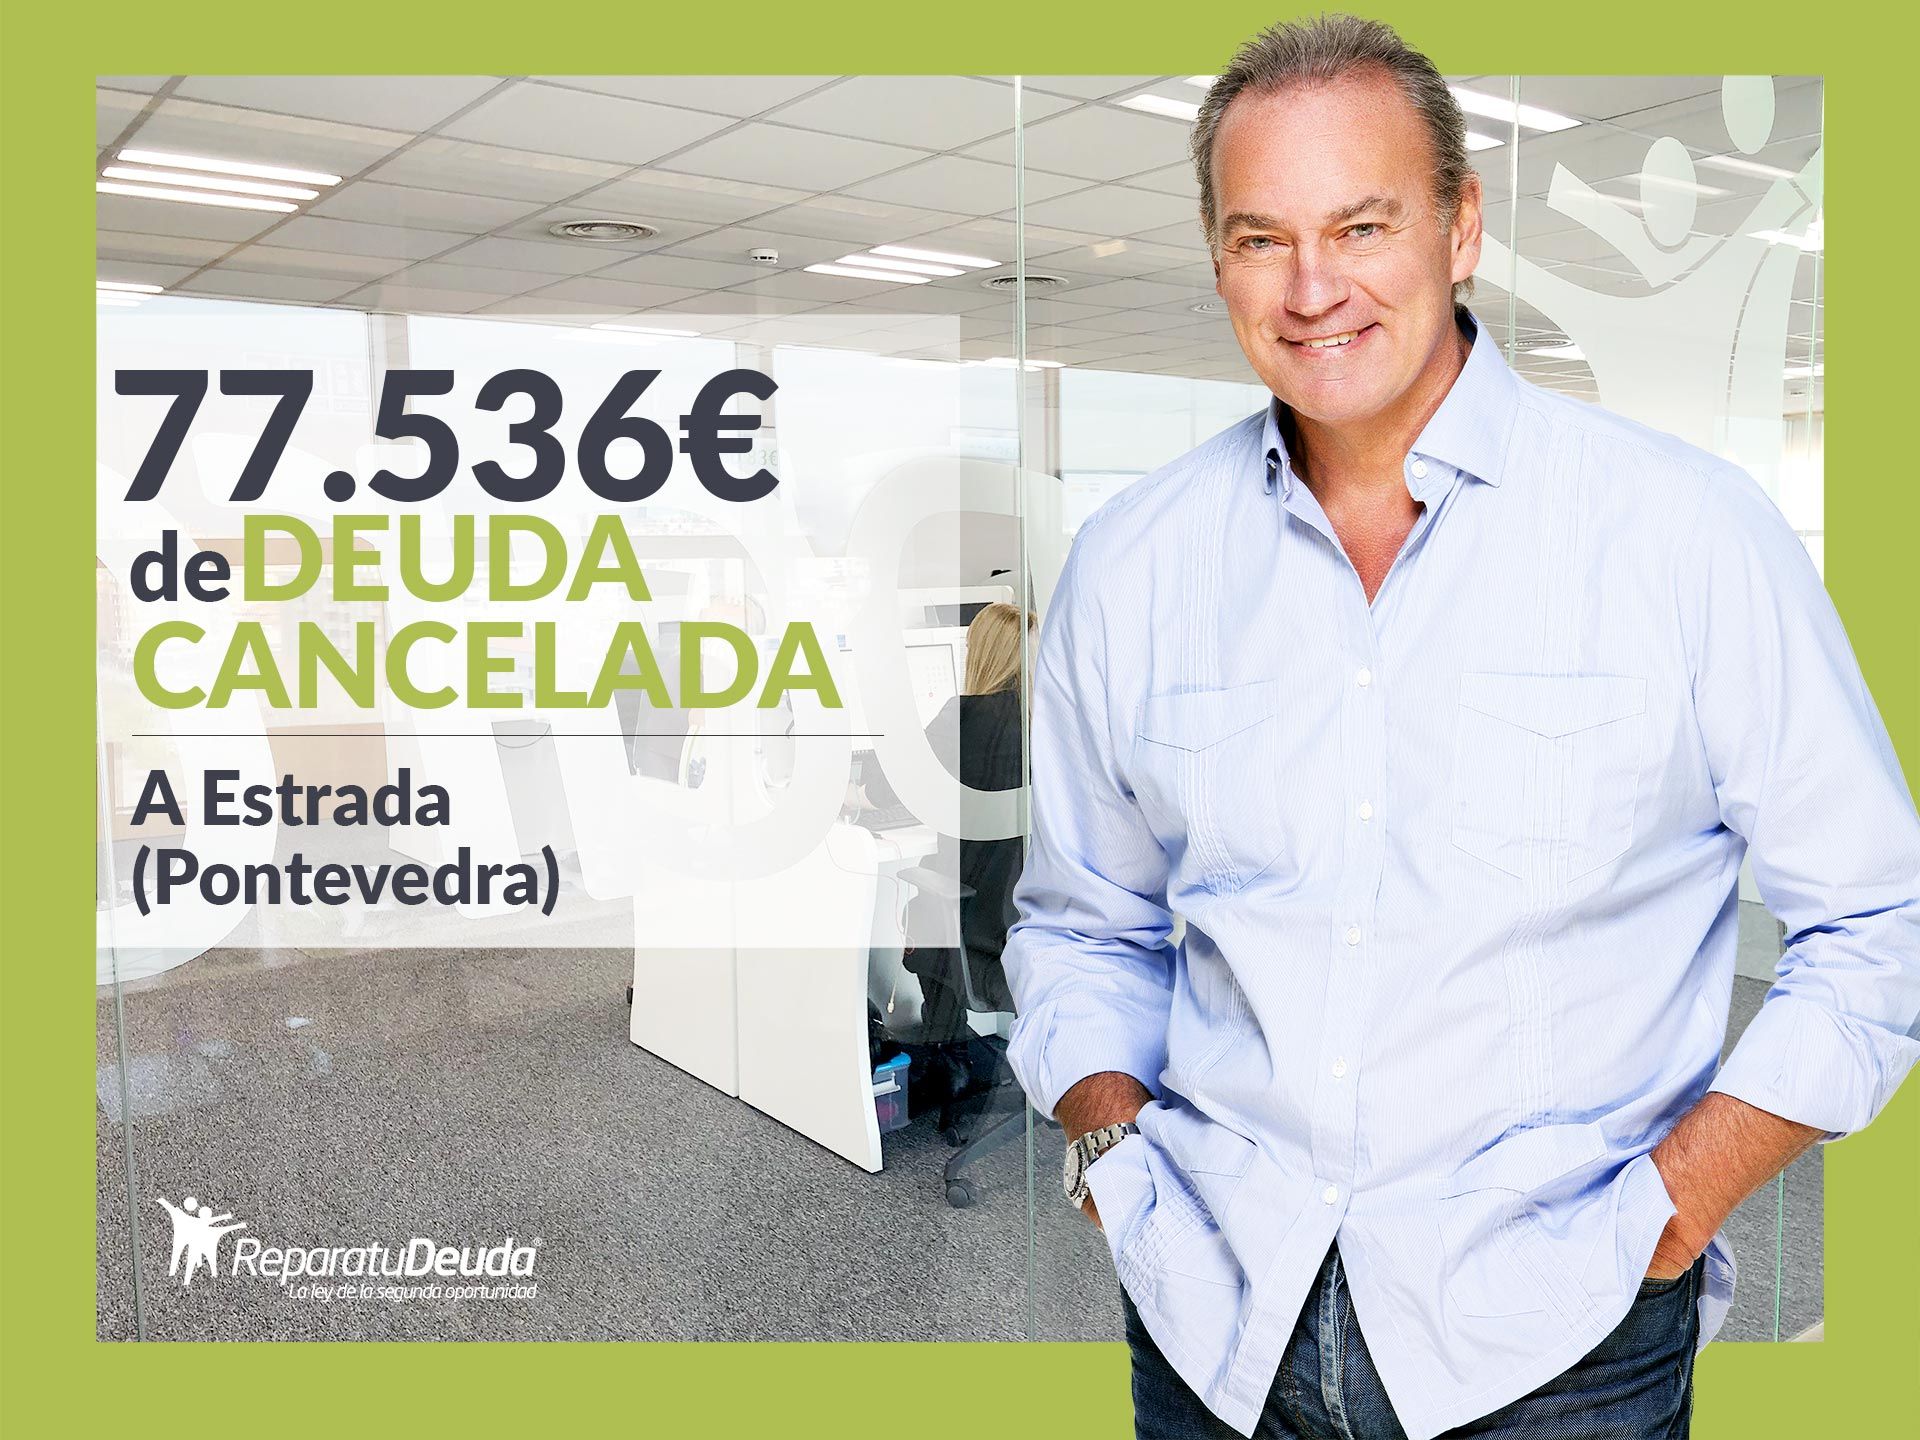 Repara tu Deuda Abogados cancela 77.536? en A Estrada (Pontevedra) con la Ley de Segunda Oportunidad